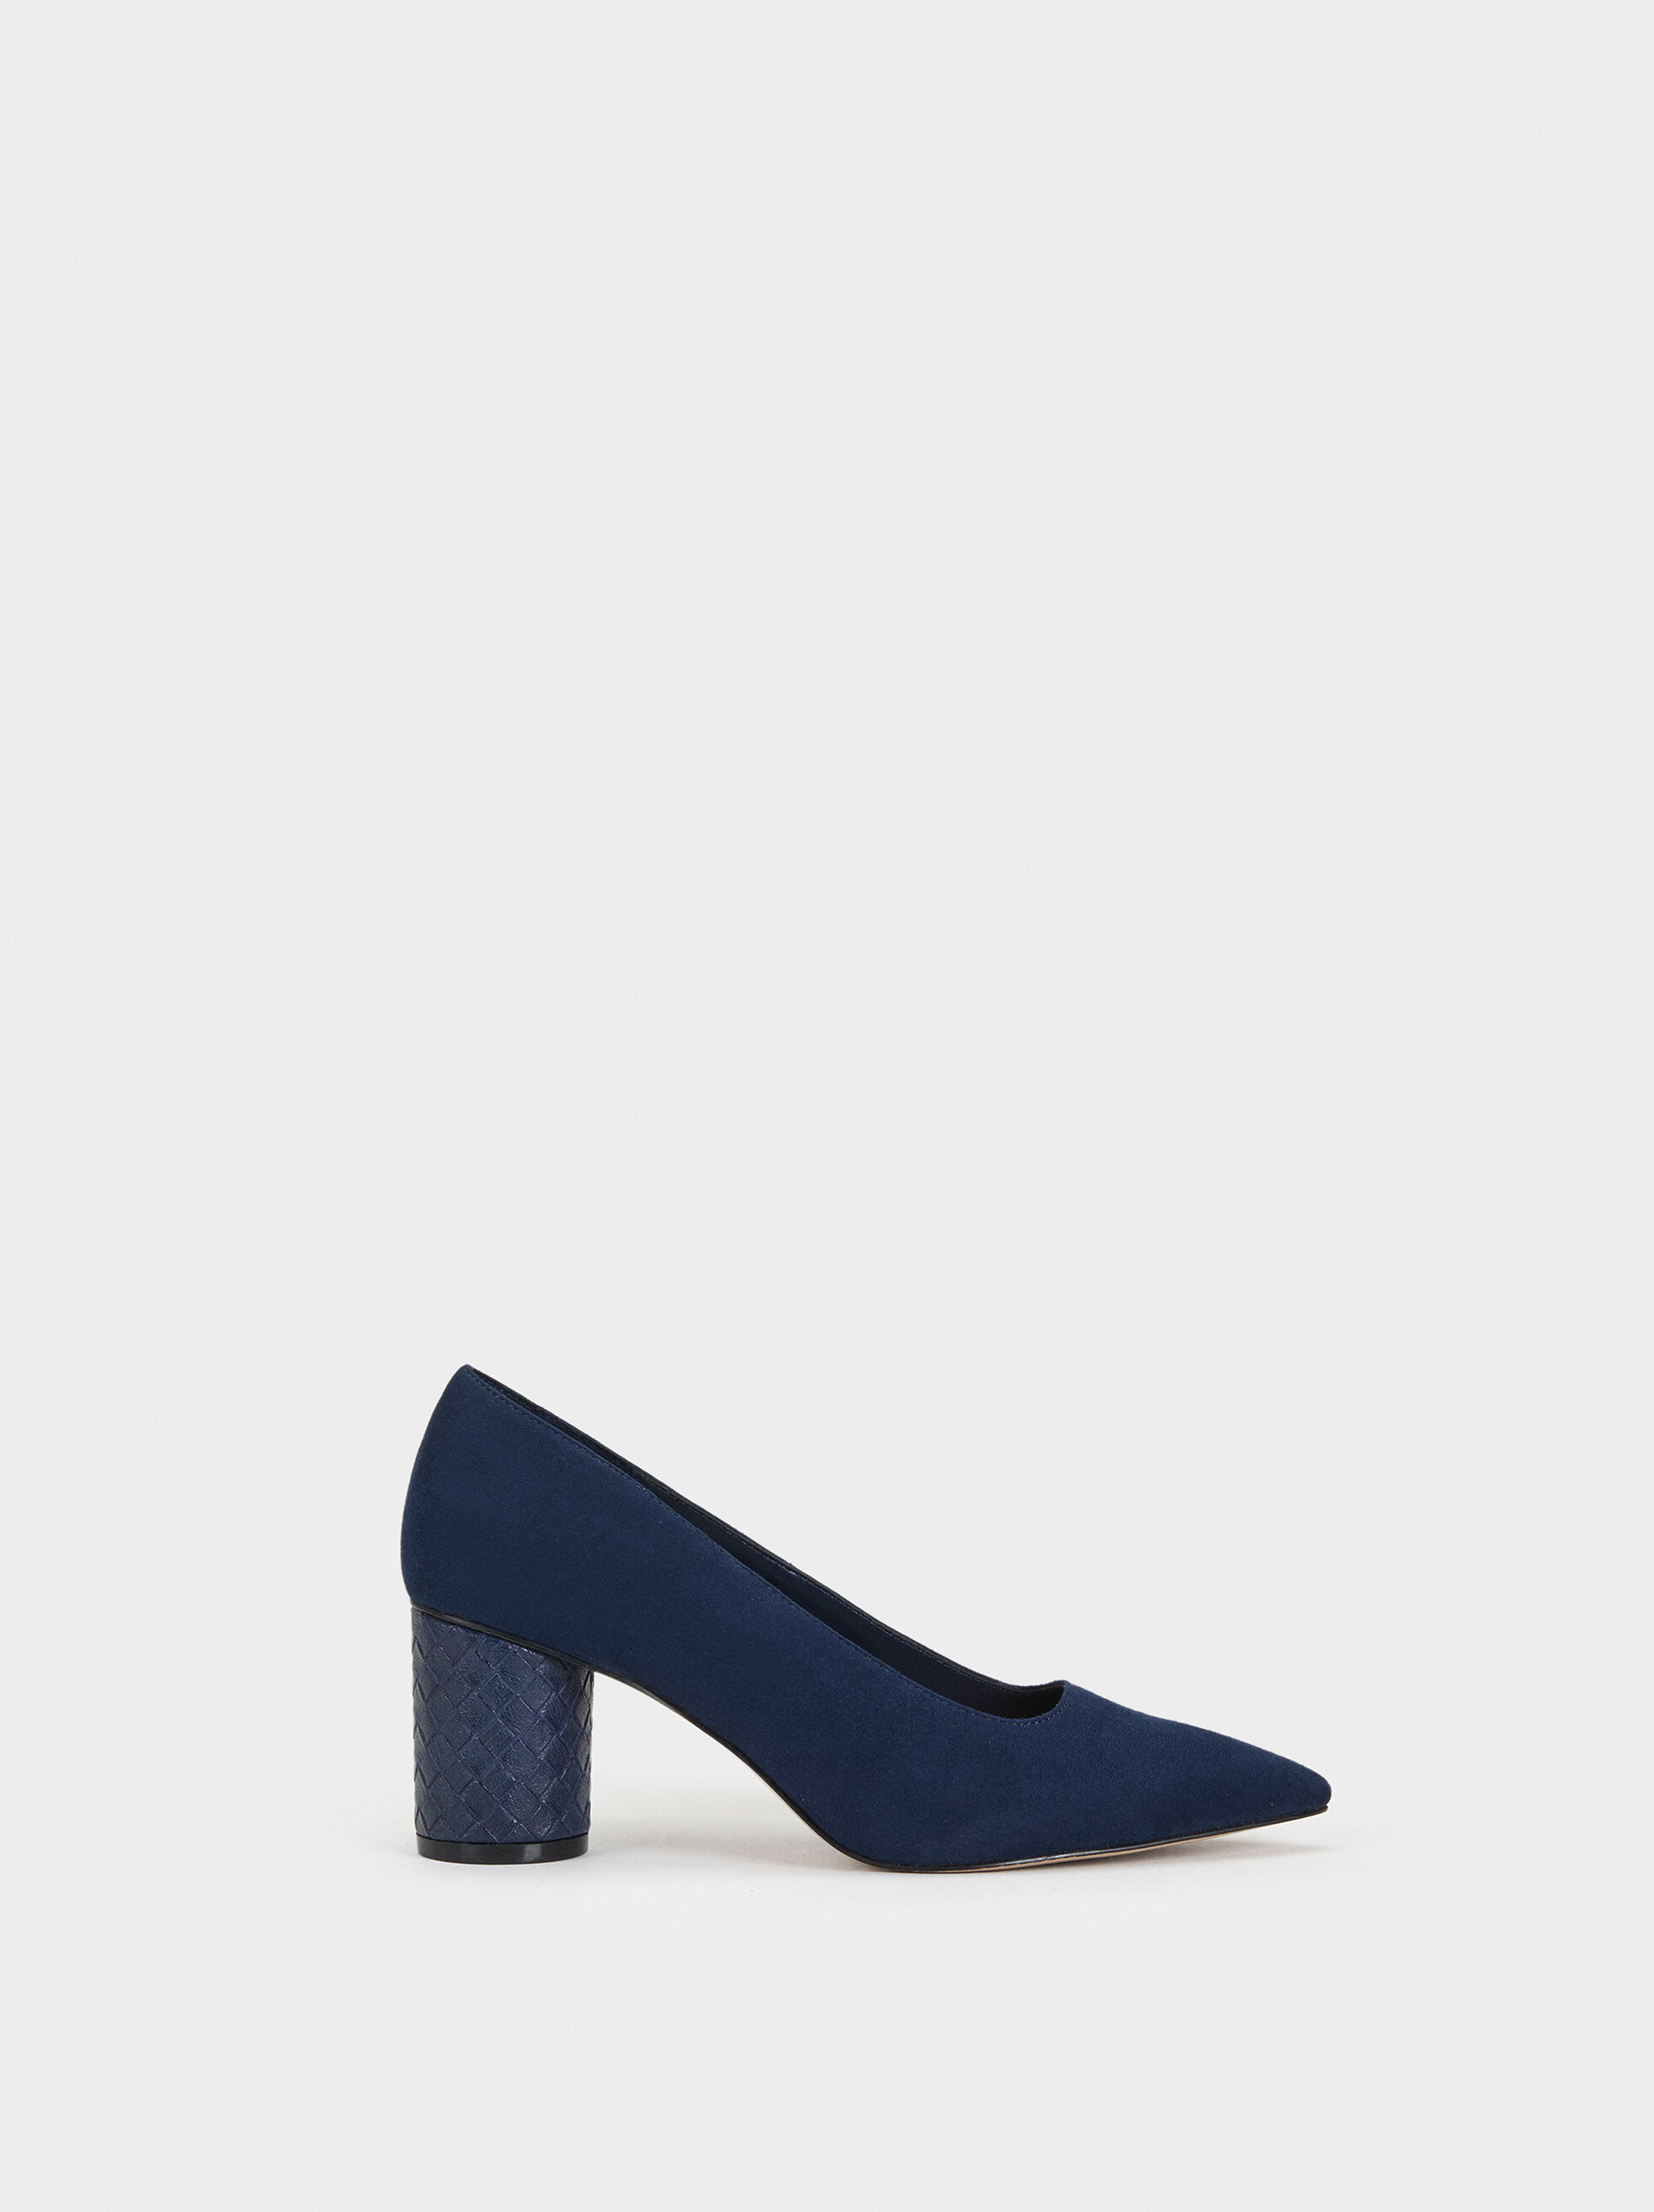 navy blue medium heel shoes